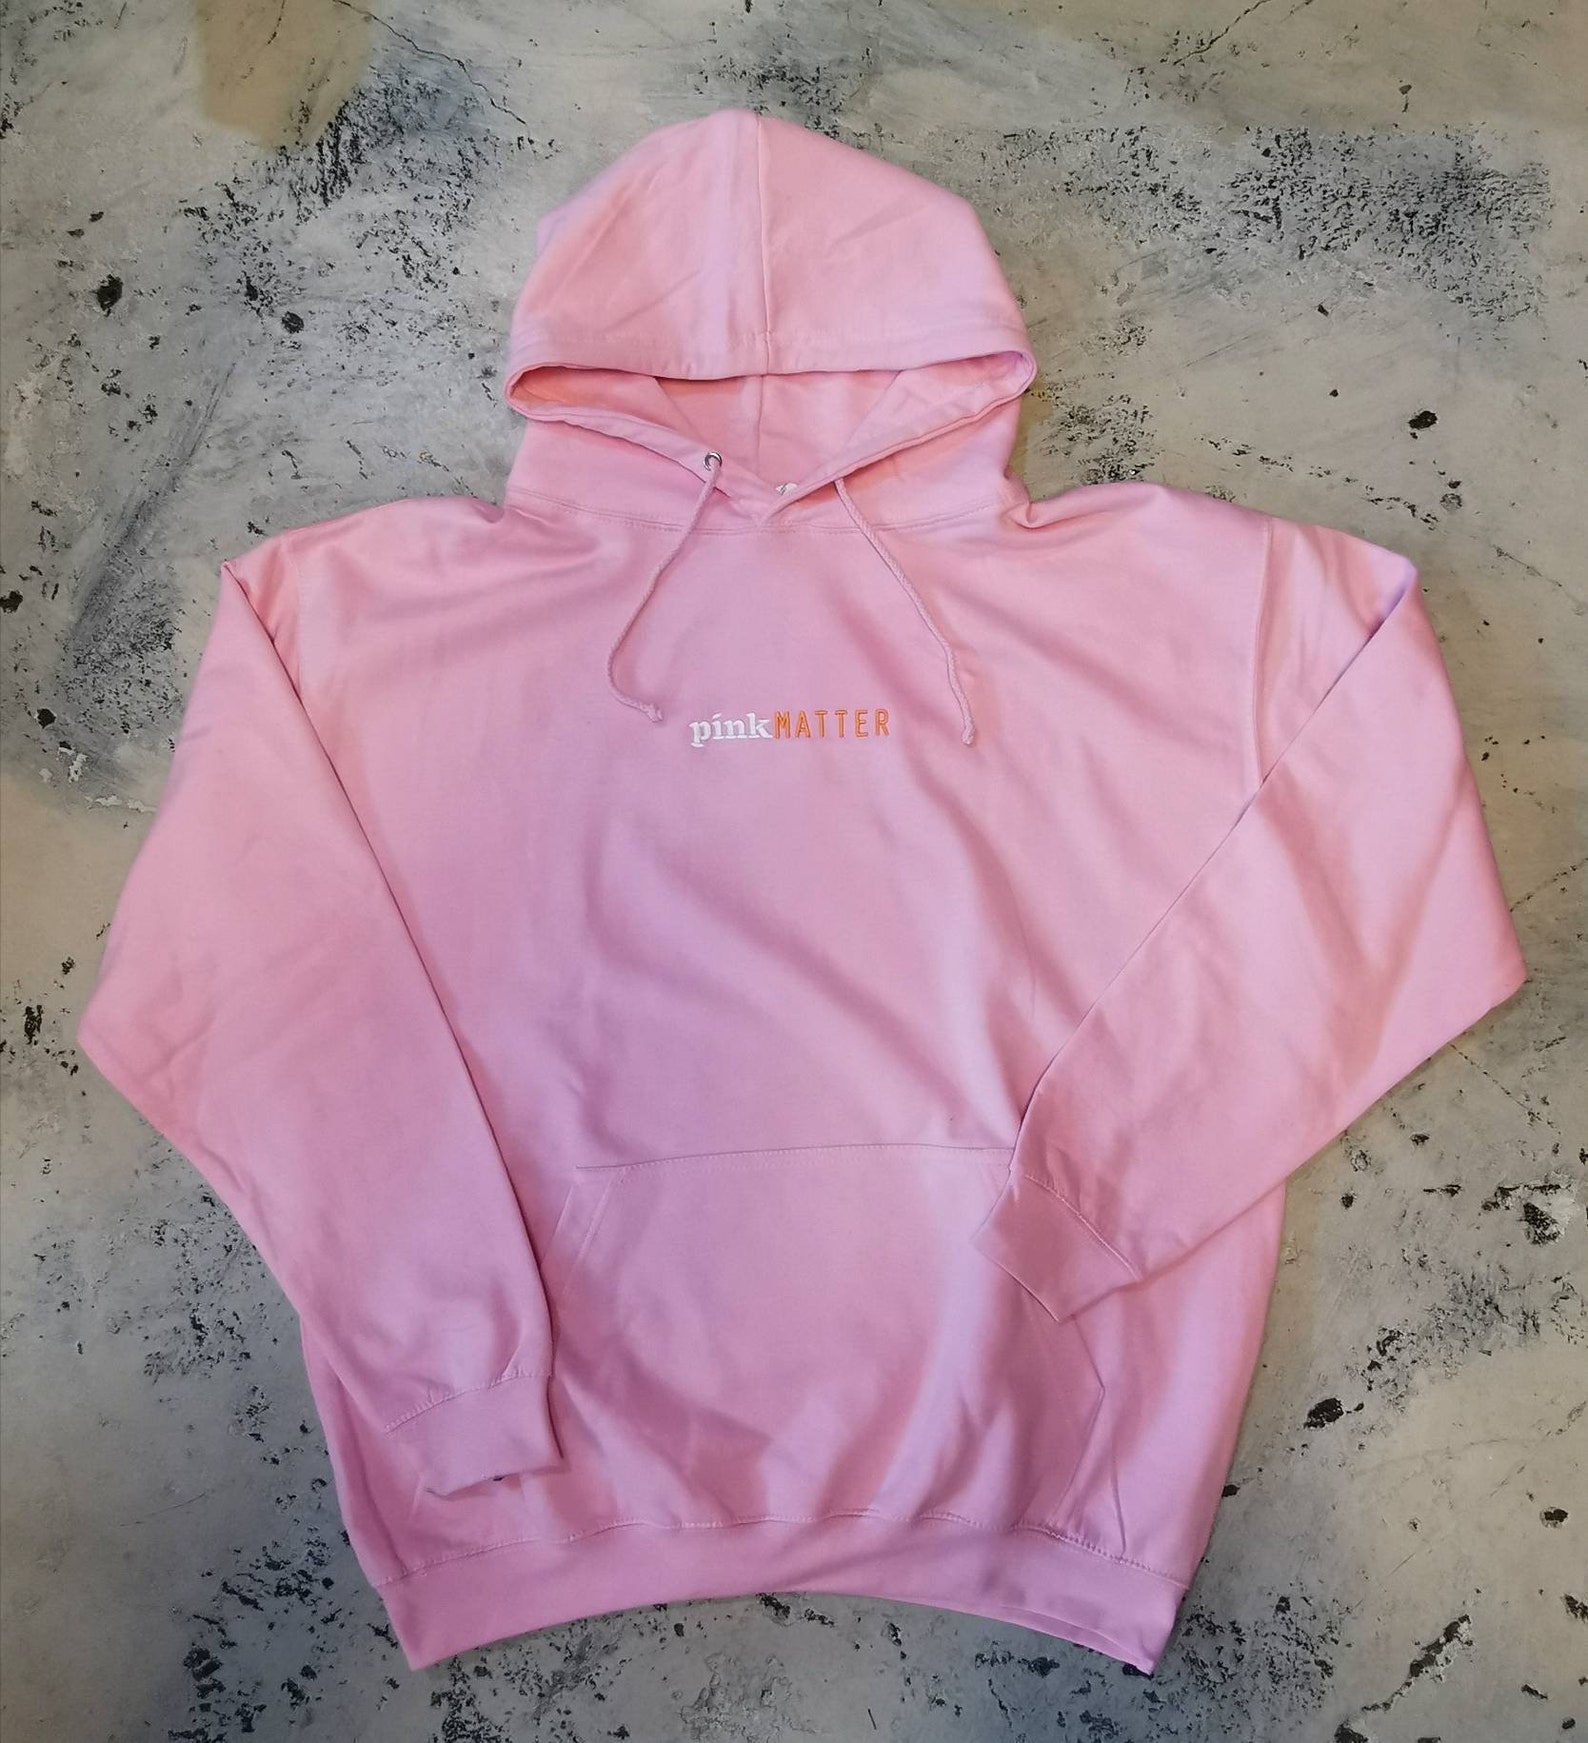 Frank Ocean inspired Pink Matter hoodie in baby pink | Etsy